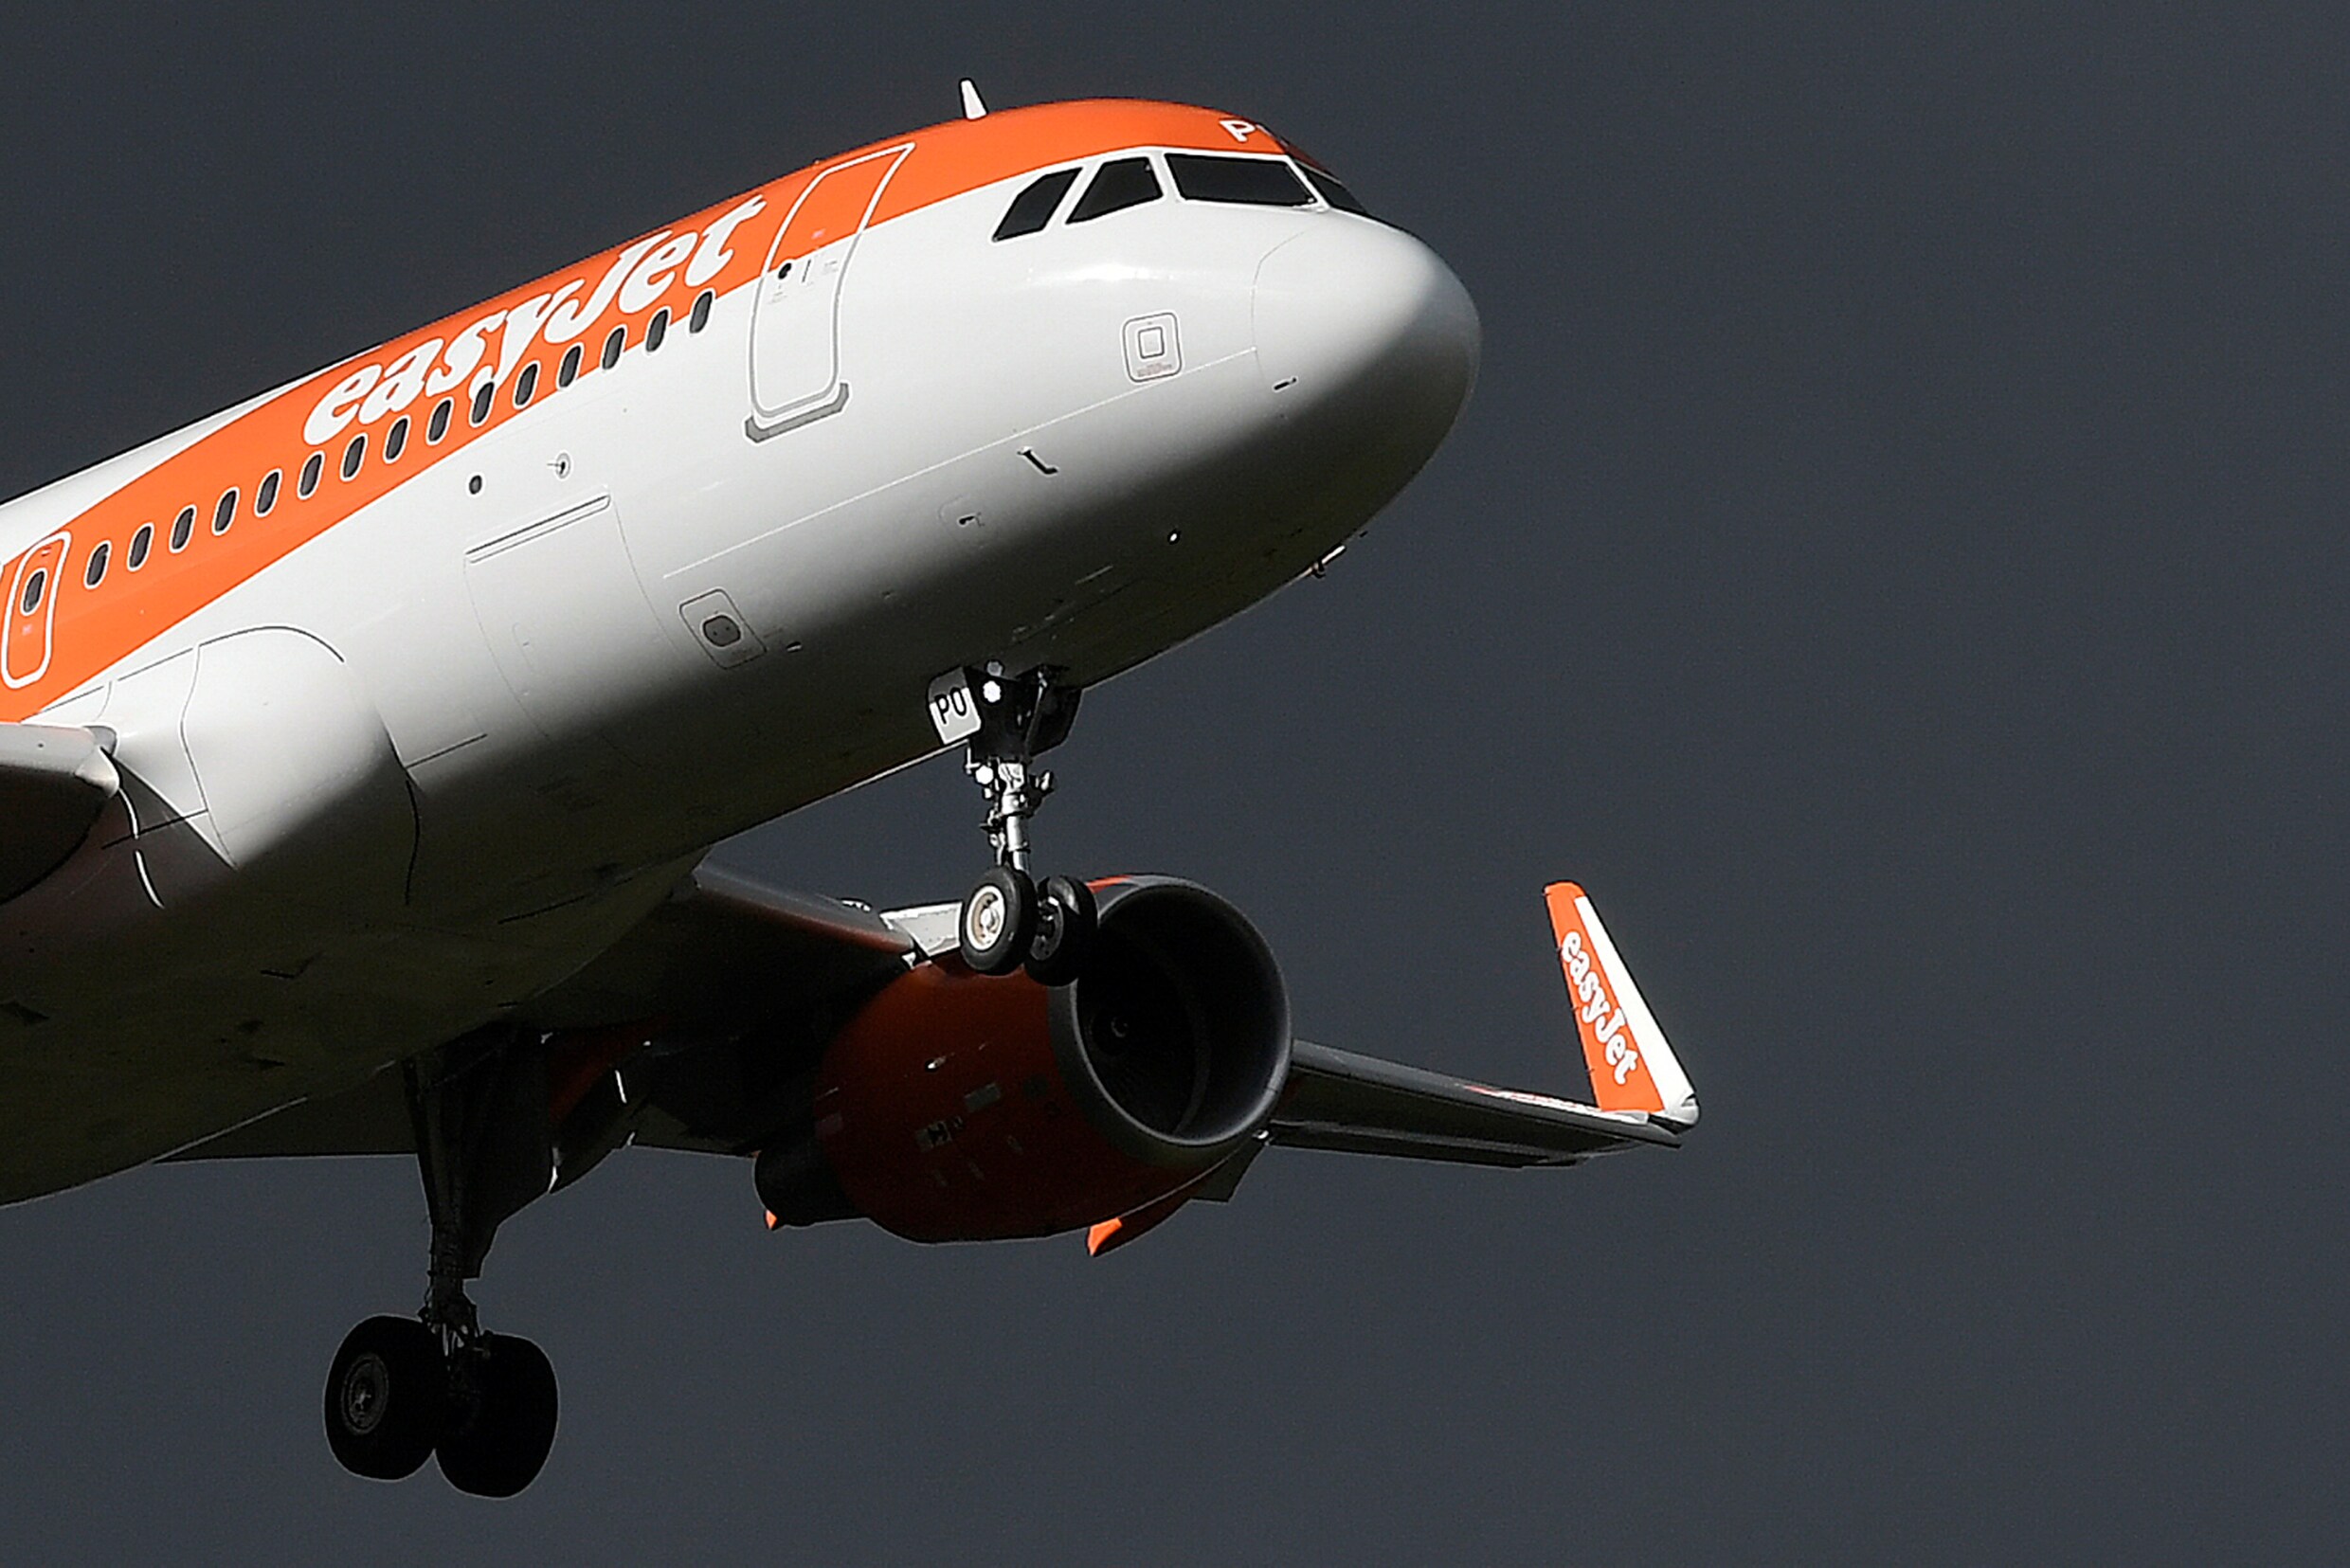 Vliegtuig maakt onvoorziene landing na "verdacht gesprek": geen explosieven gevonden